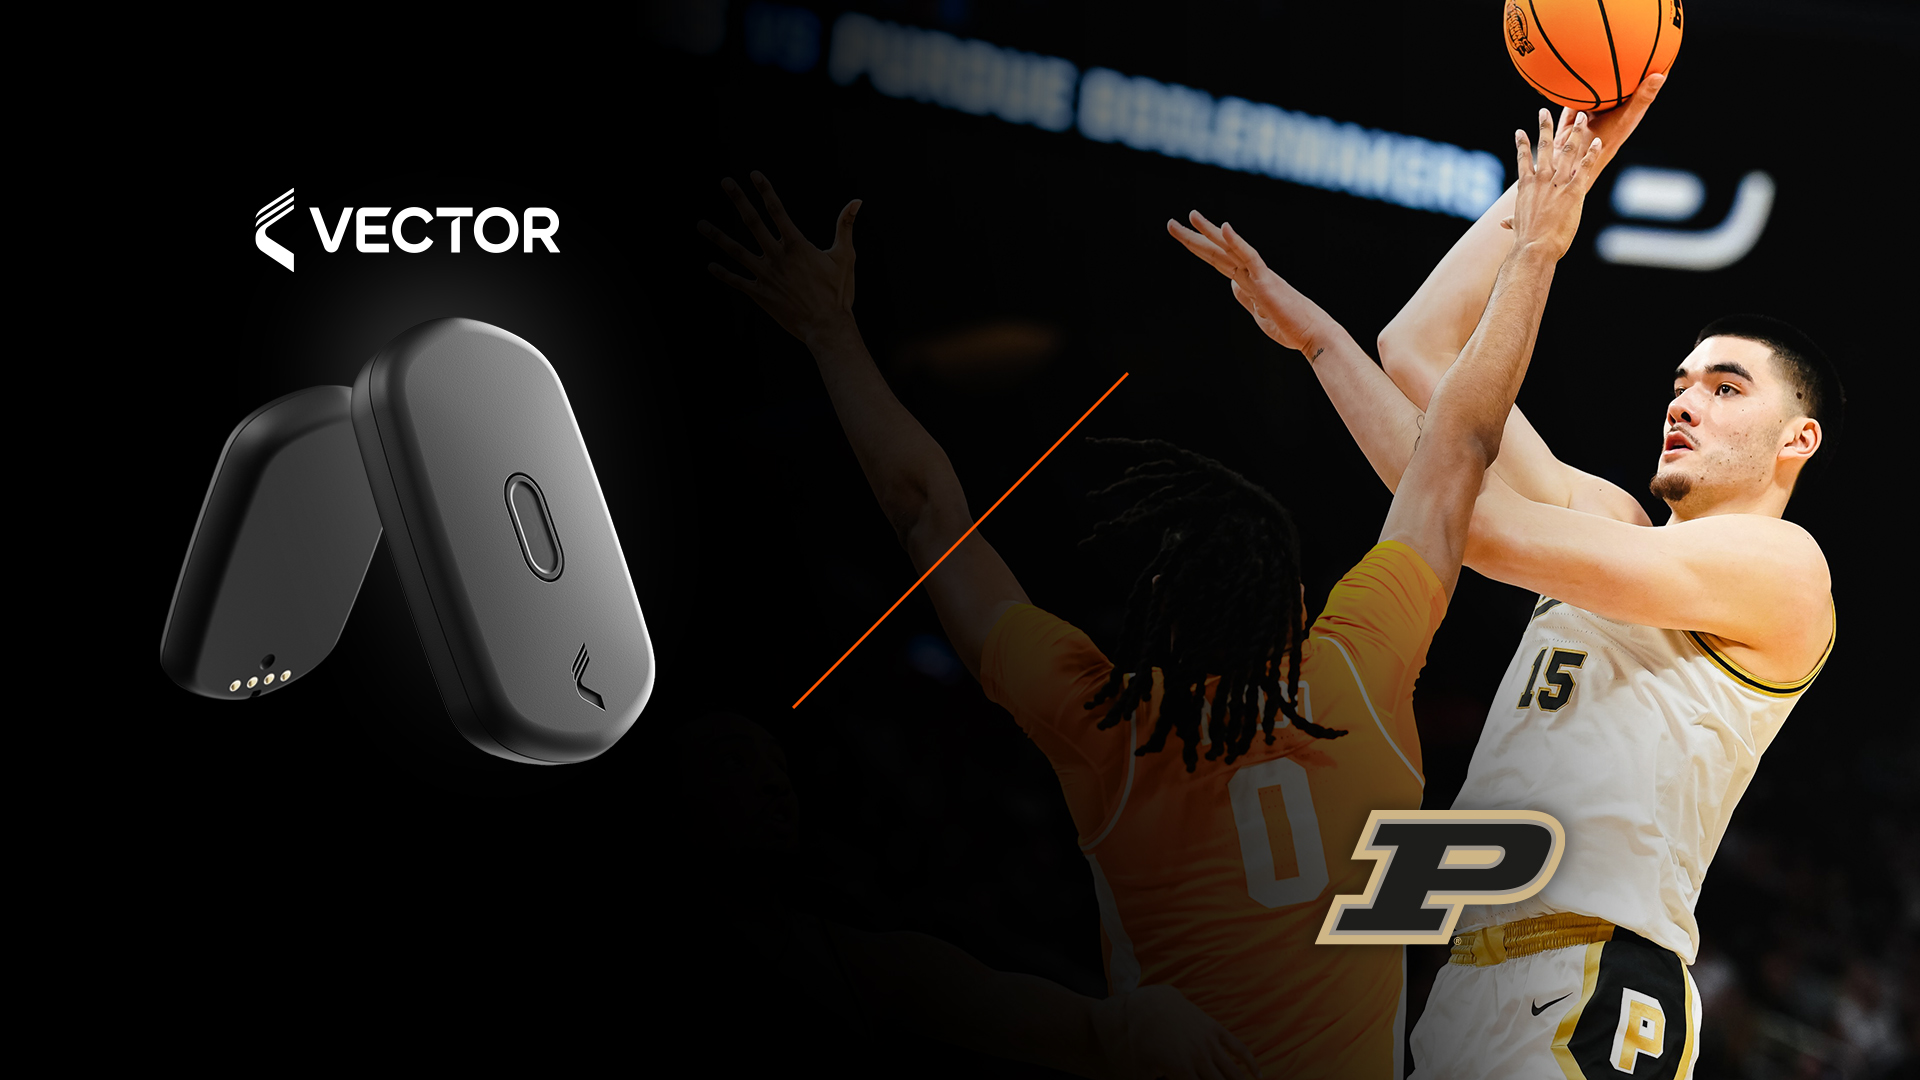 Werbegrafik eines Vector T7-Sportüberwachungsgeräts mit einem Purdue-Basketballspieler in Aktion, bereit zum Wurf.